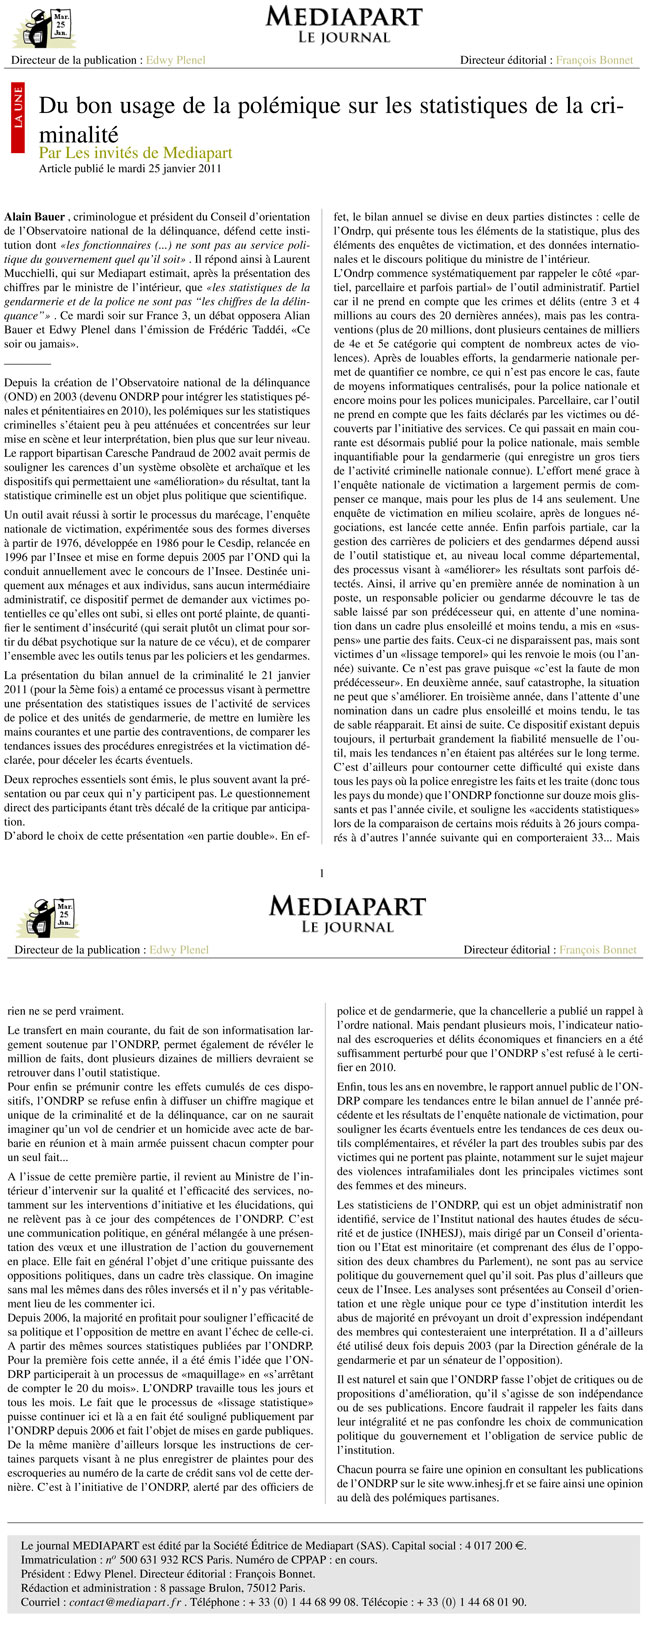 mediapart-25-01-2011